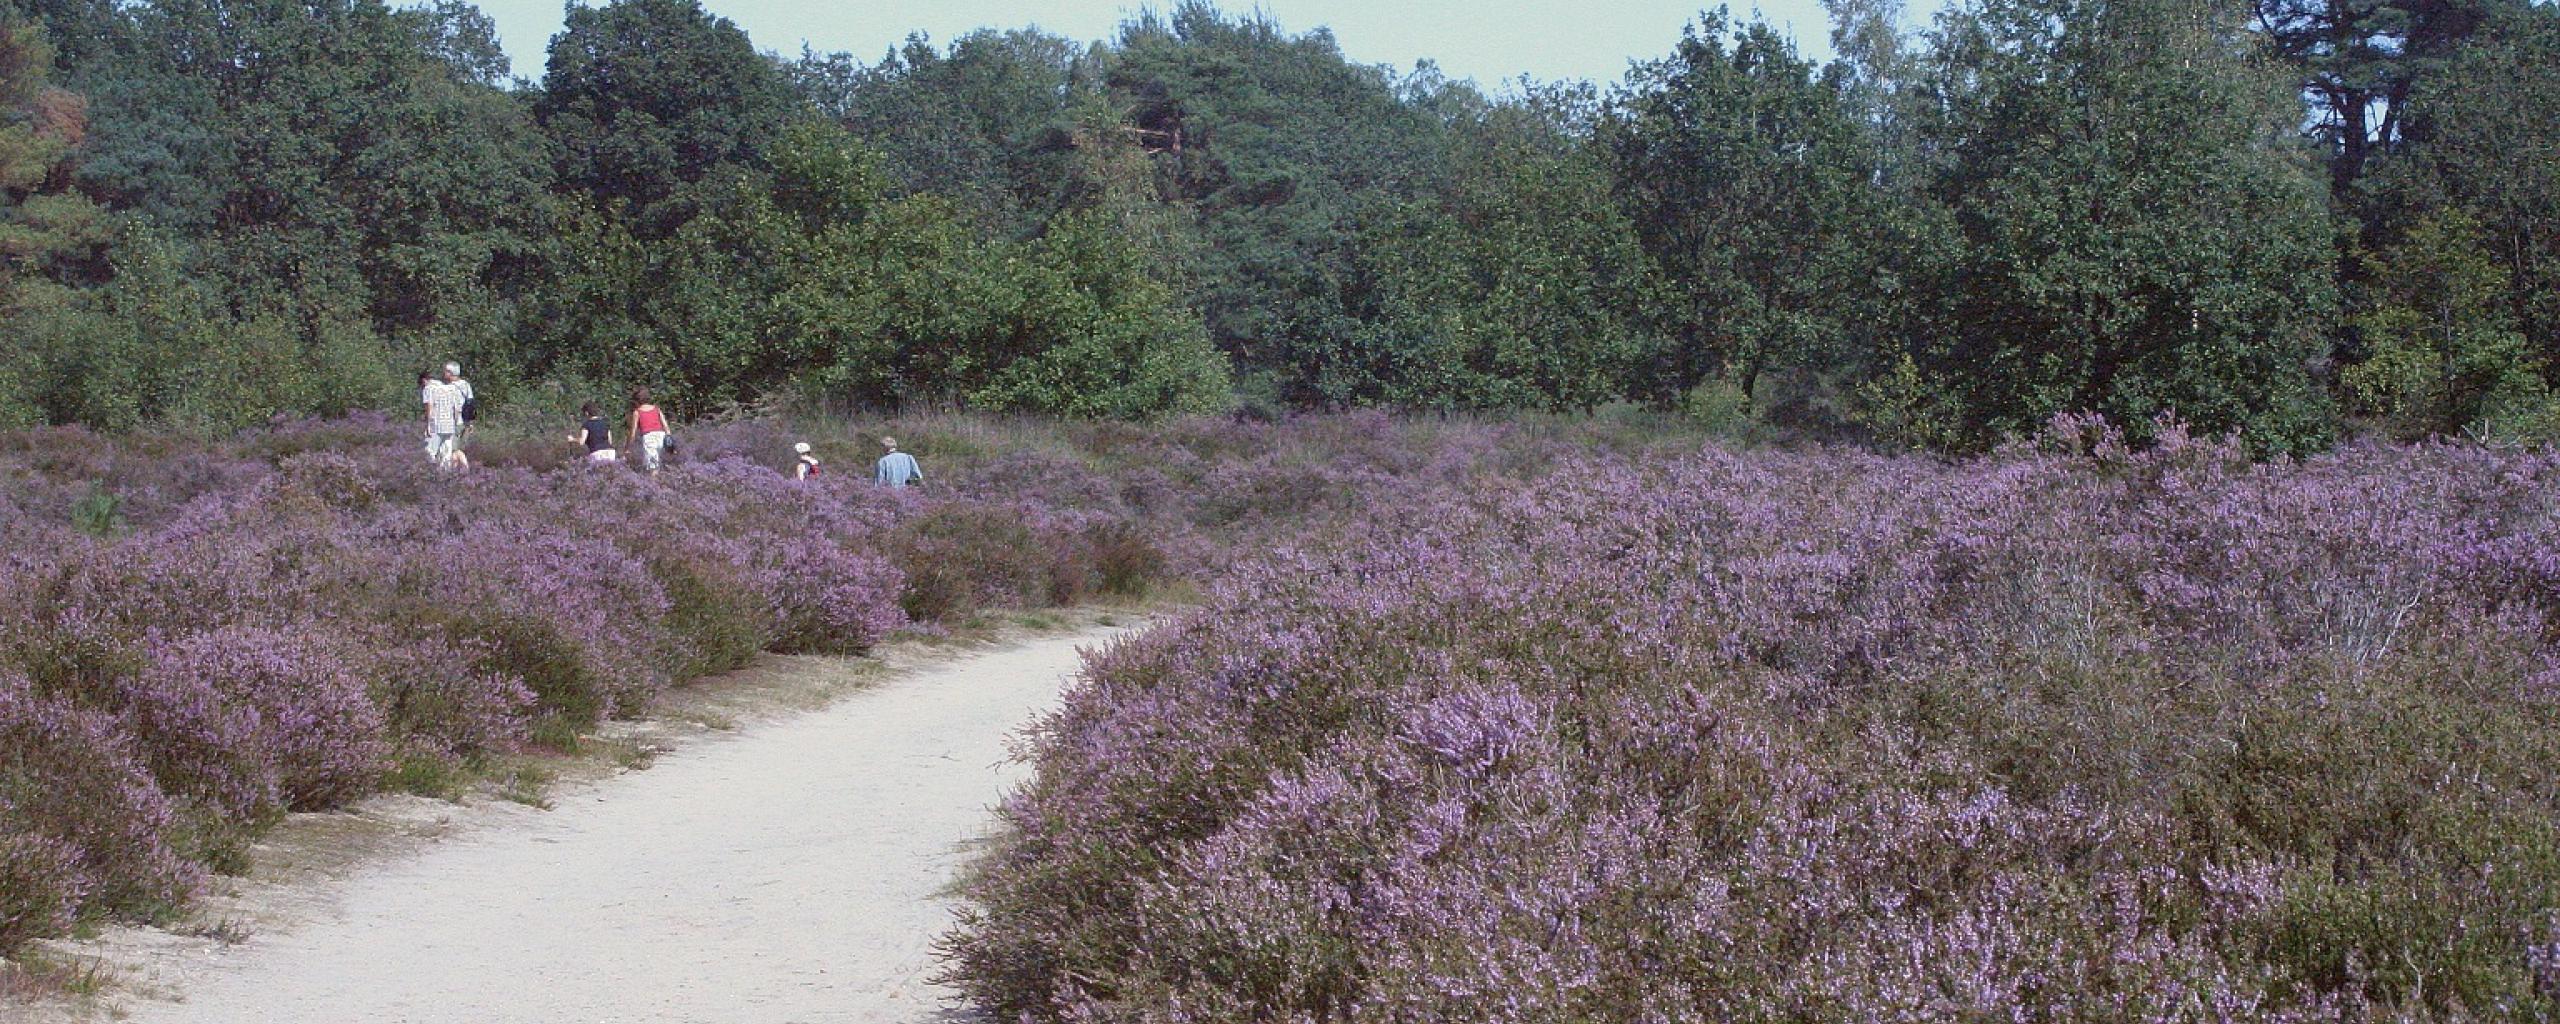 Wandelaars lopen tussen paarse heide. 